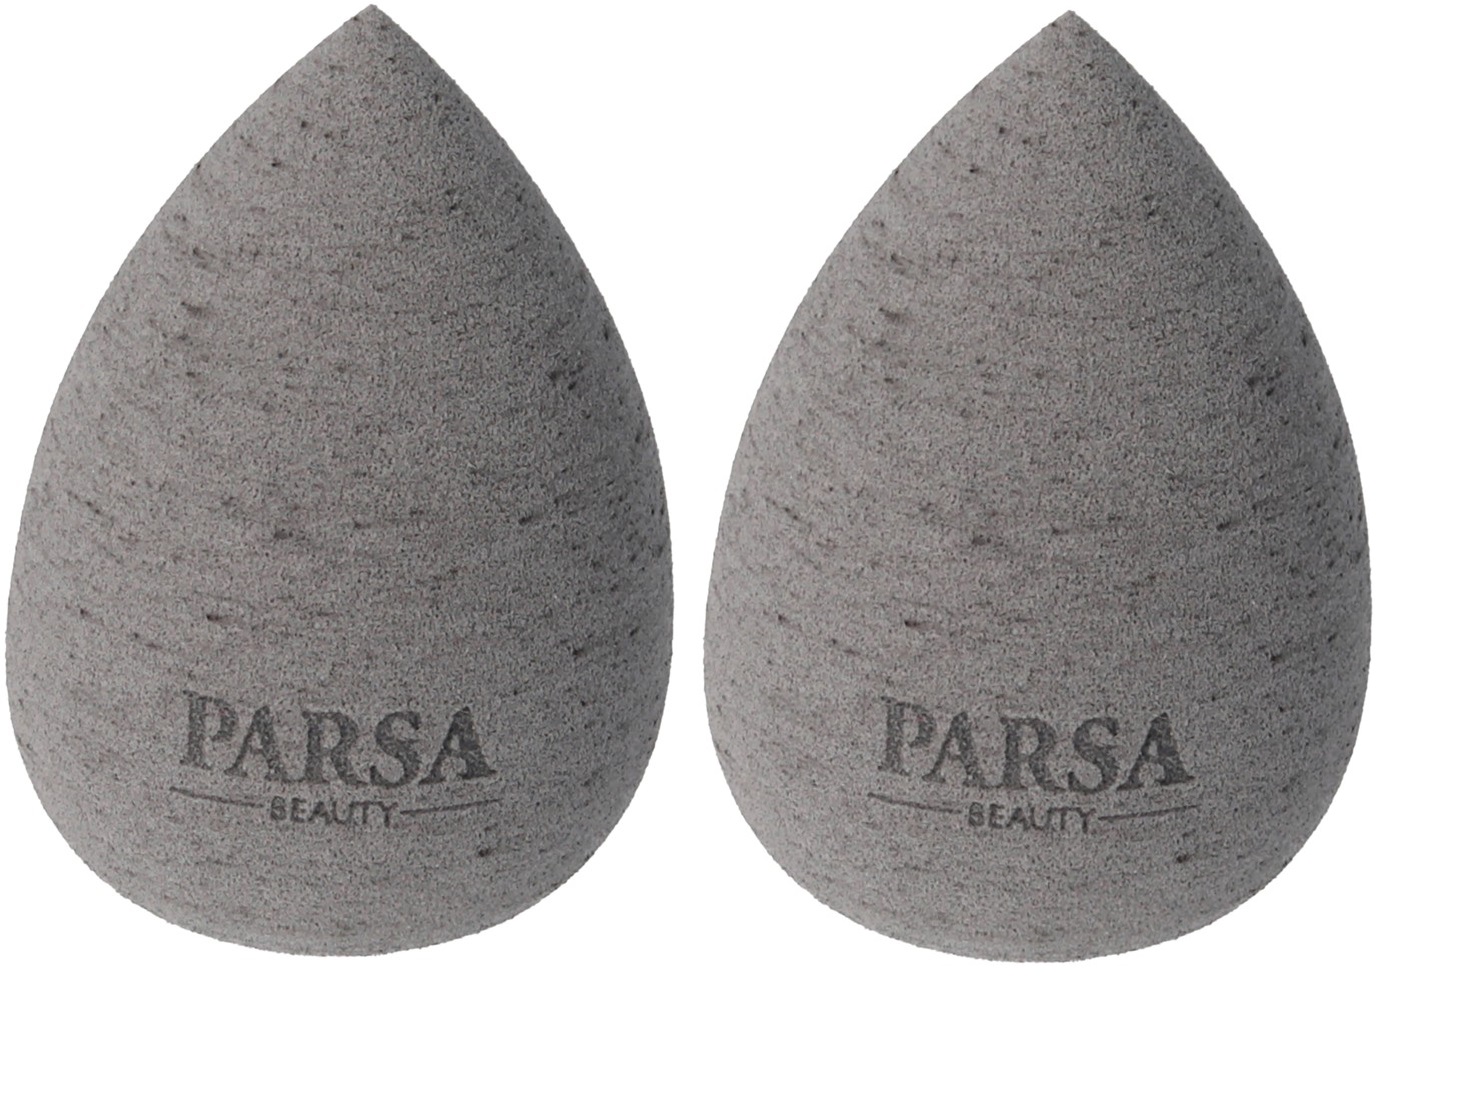 Parsa - Beauty Make-Up Egg Coconut Grey x 2 - Skjønnhet